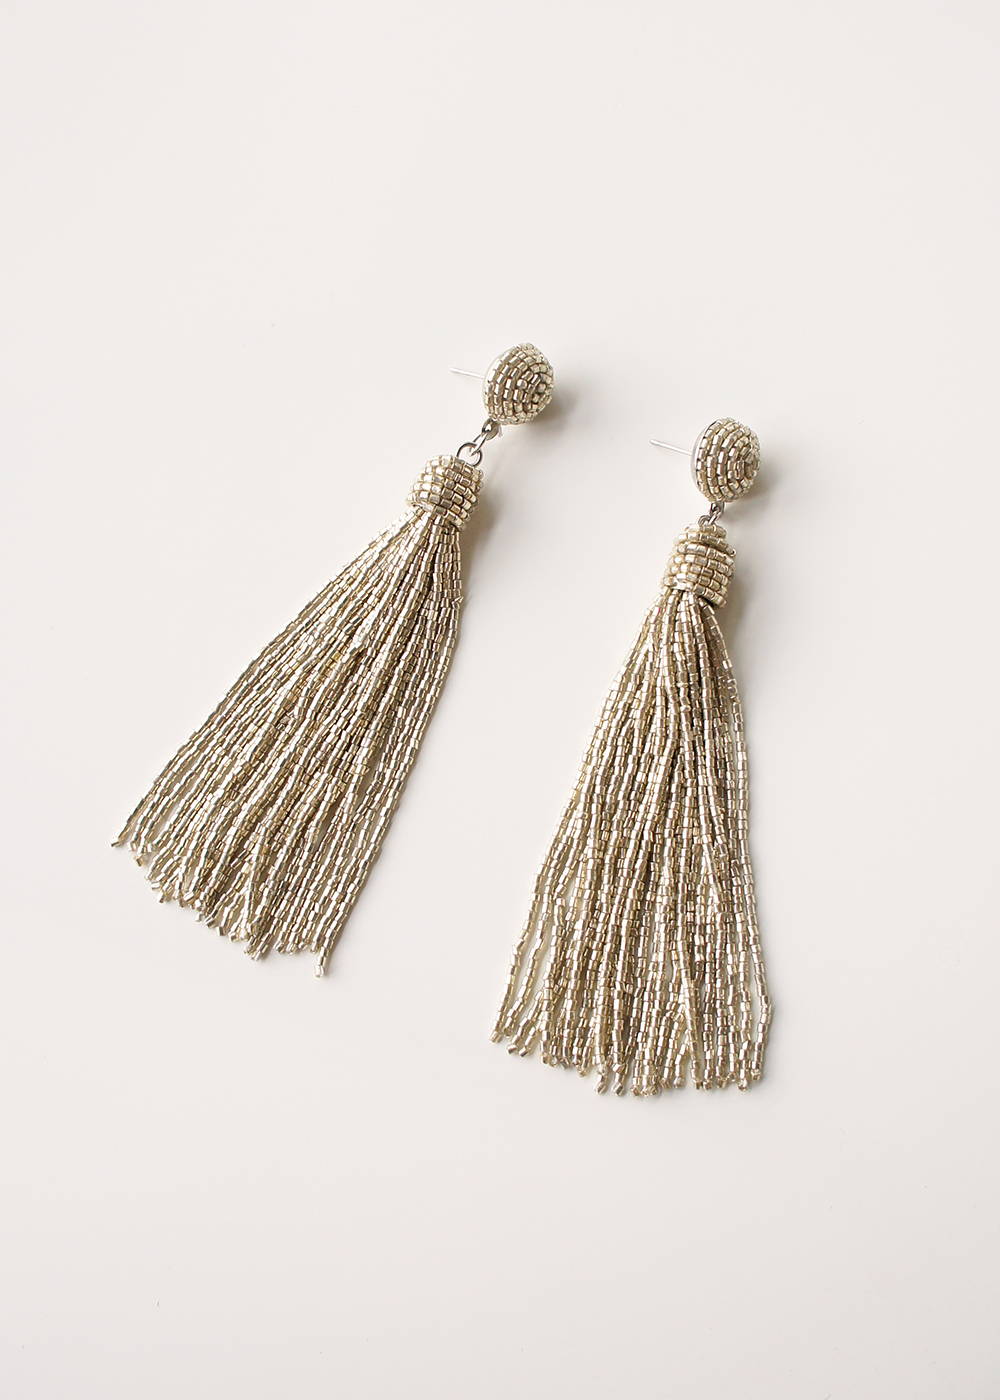 A pair of silver beaded tassel earrings